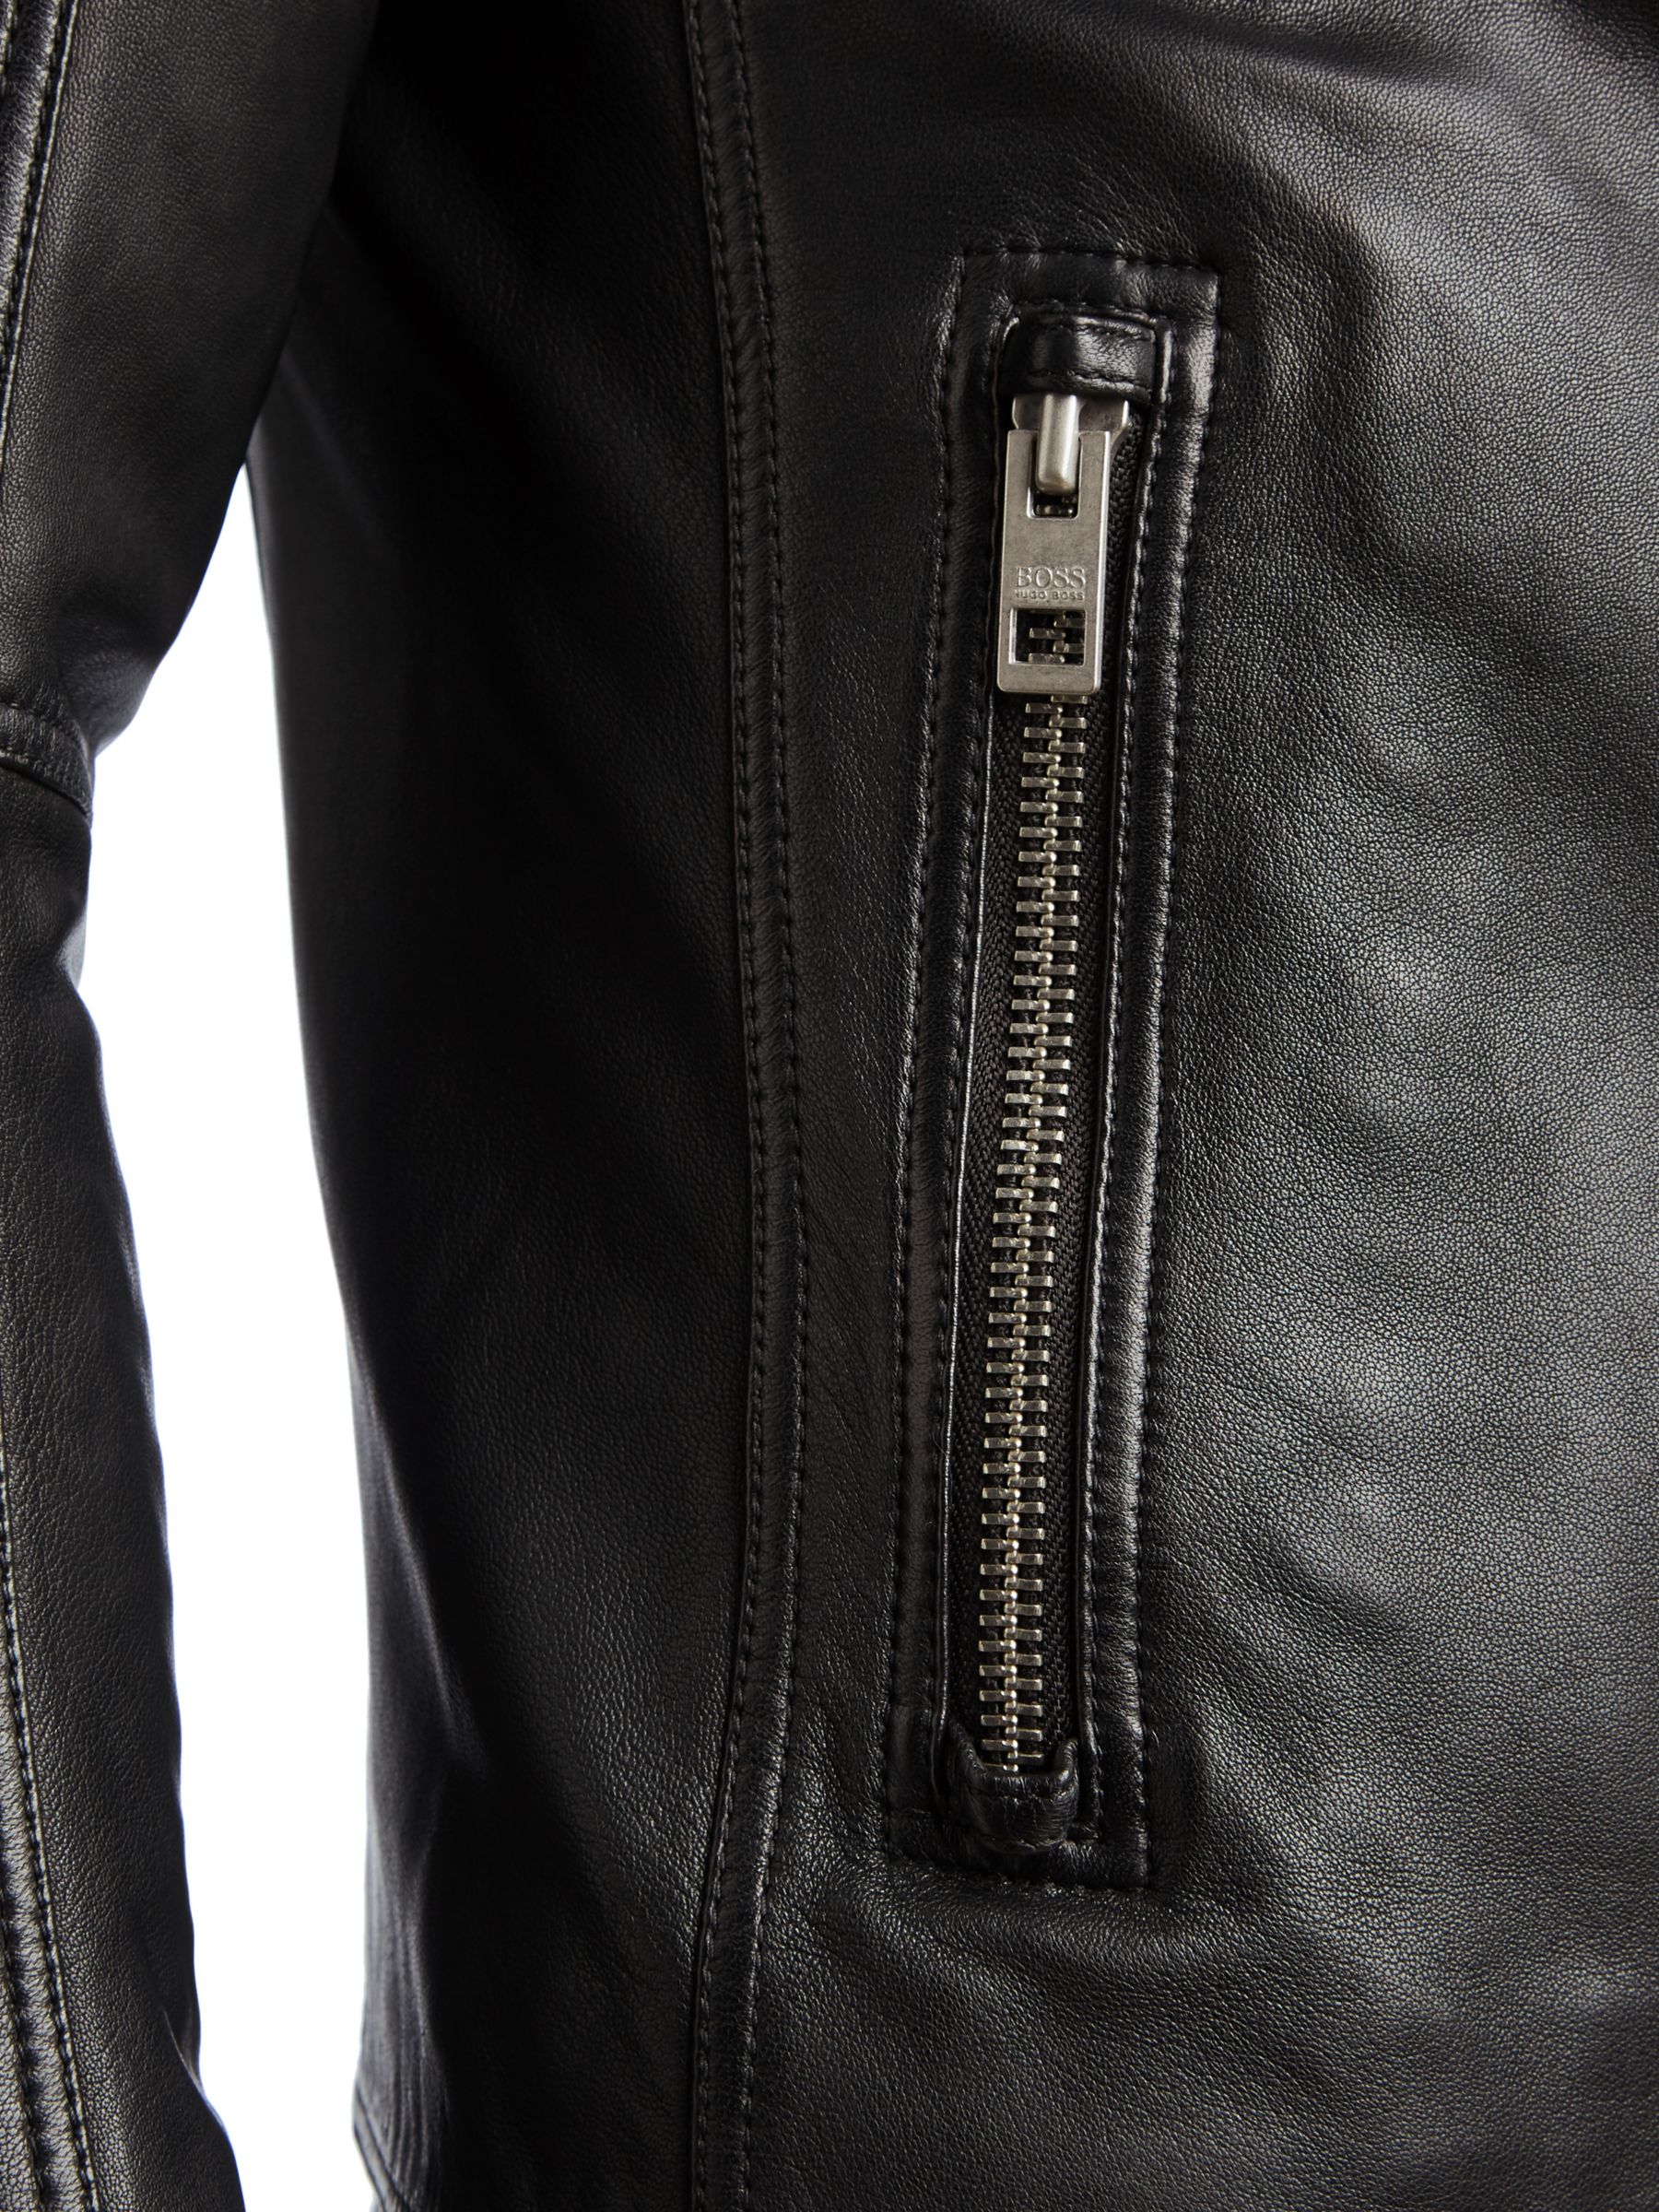 BOSS Jaysee Leather Biker Jacket, Black, 36R